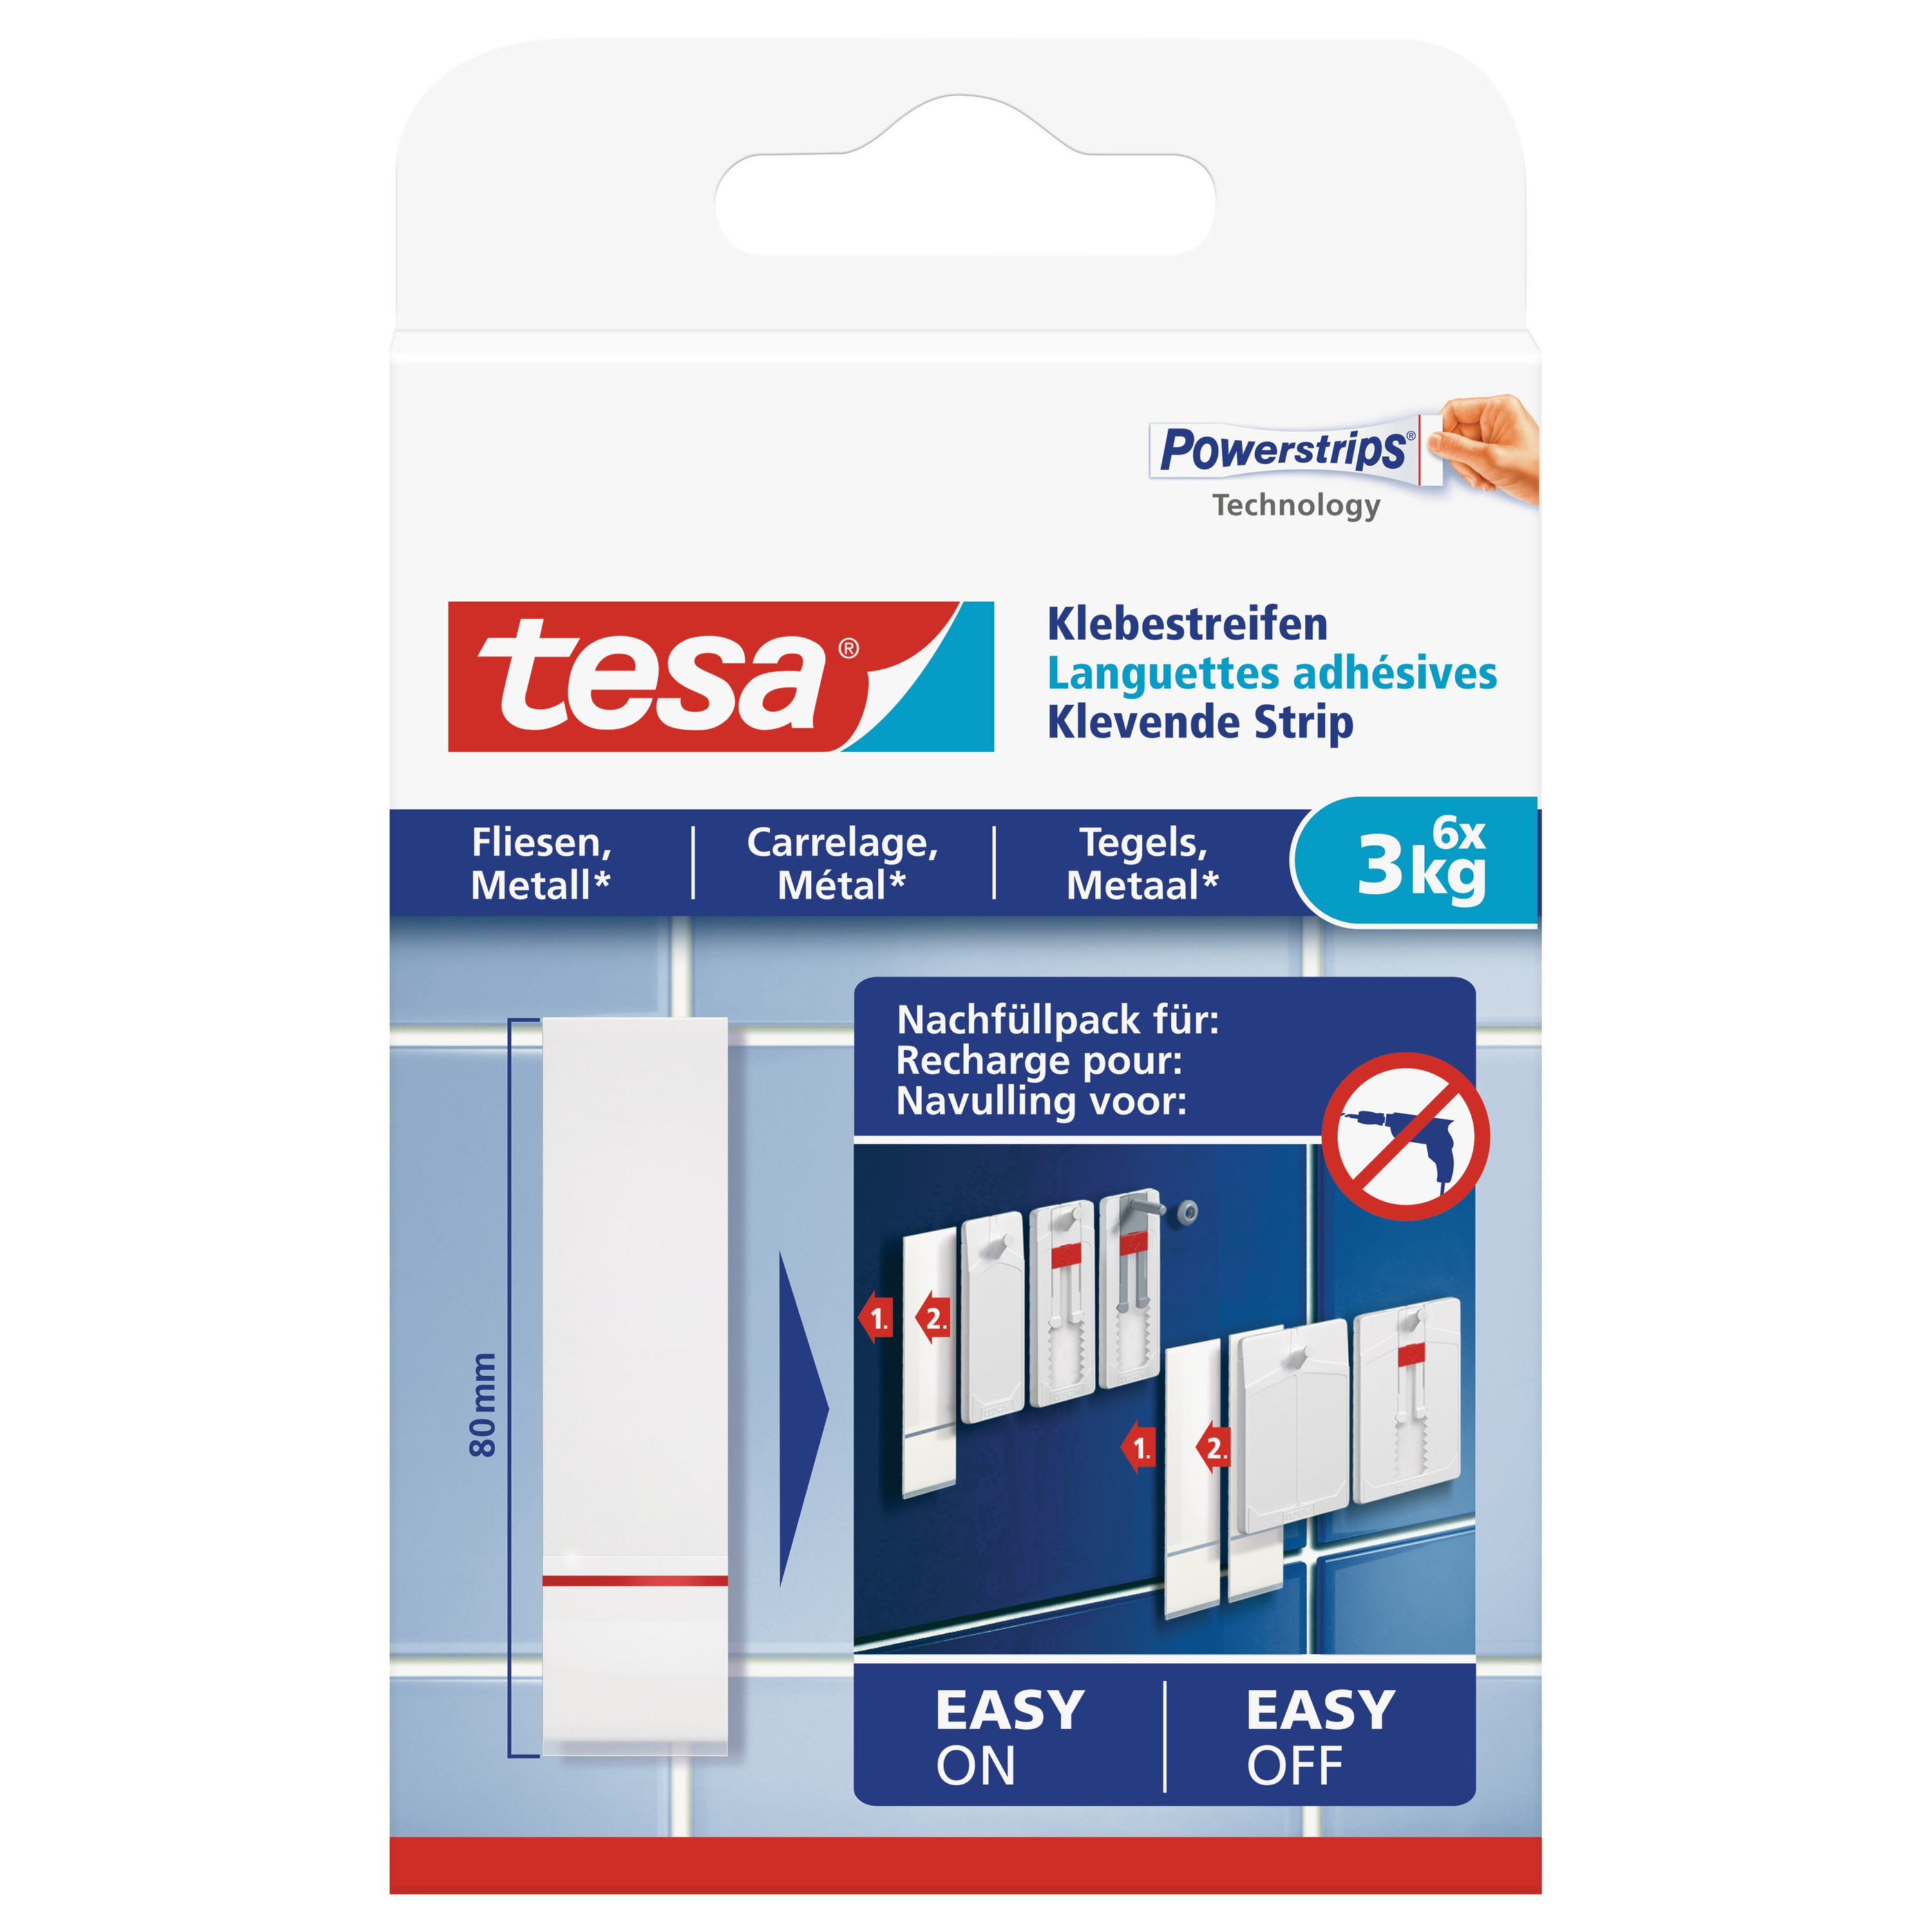 6x Tesa Powerstrips voor tegels-metaal klusbenodigdheden